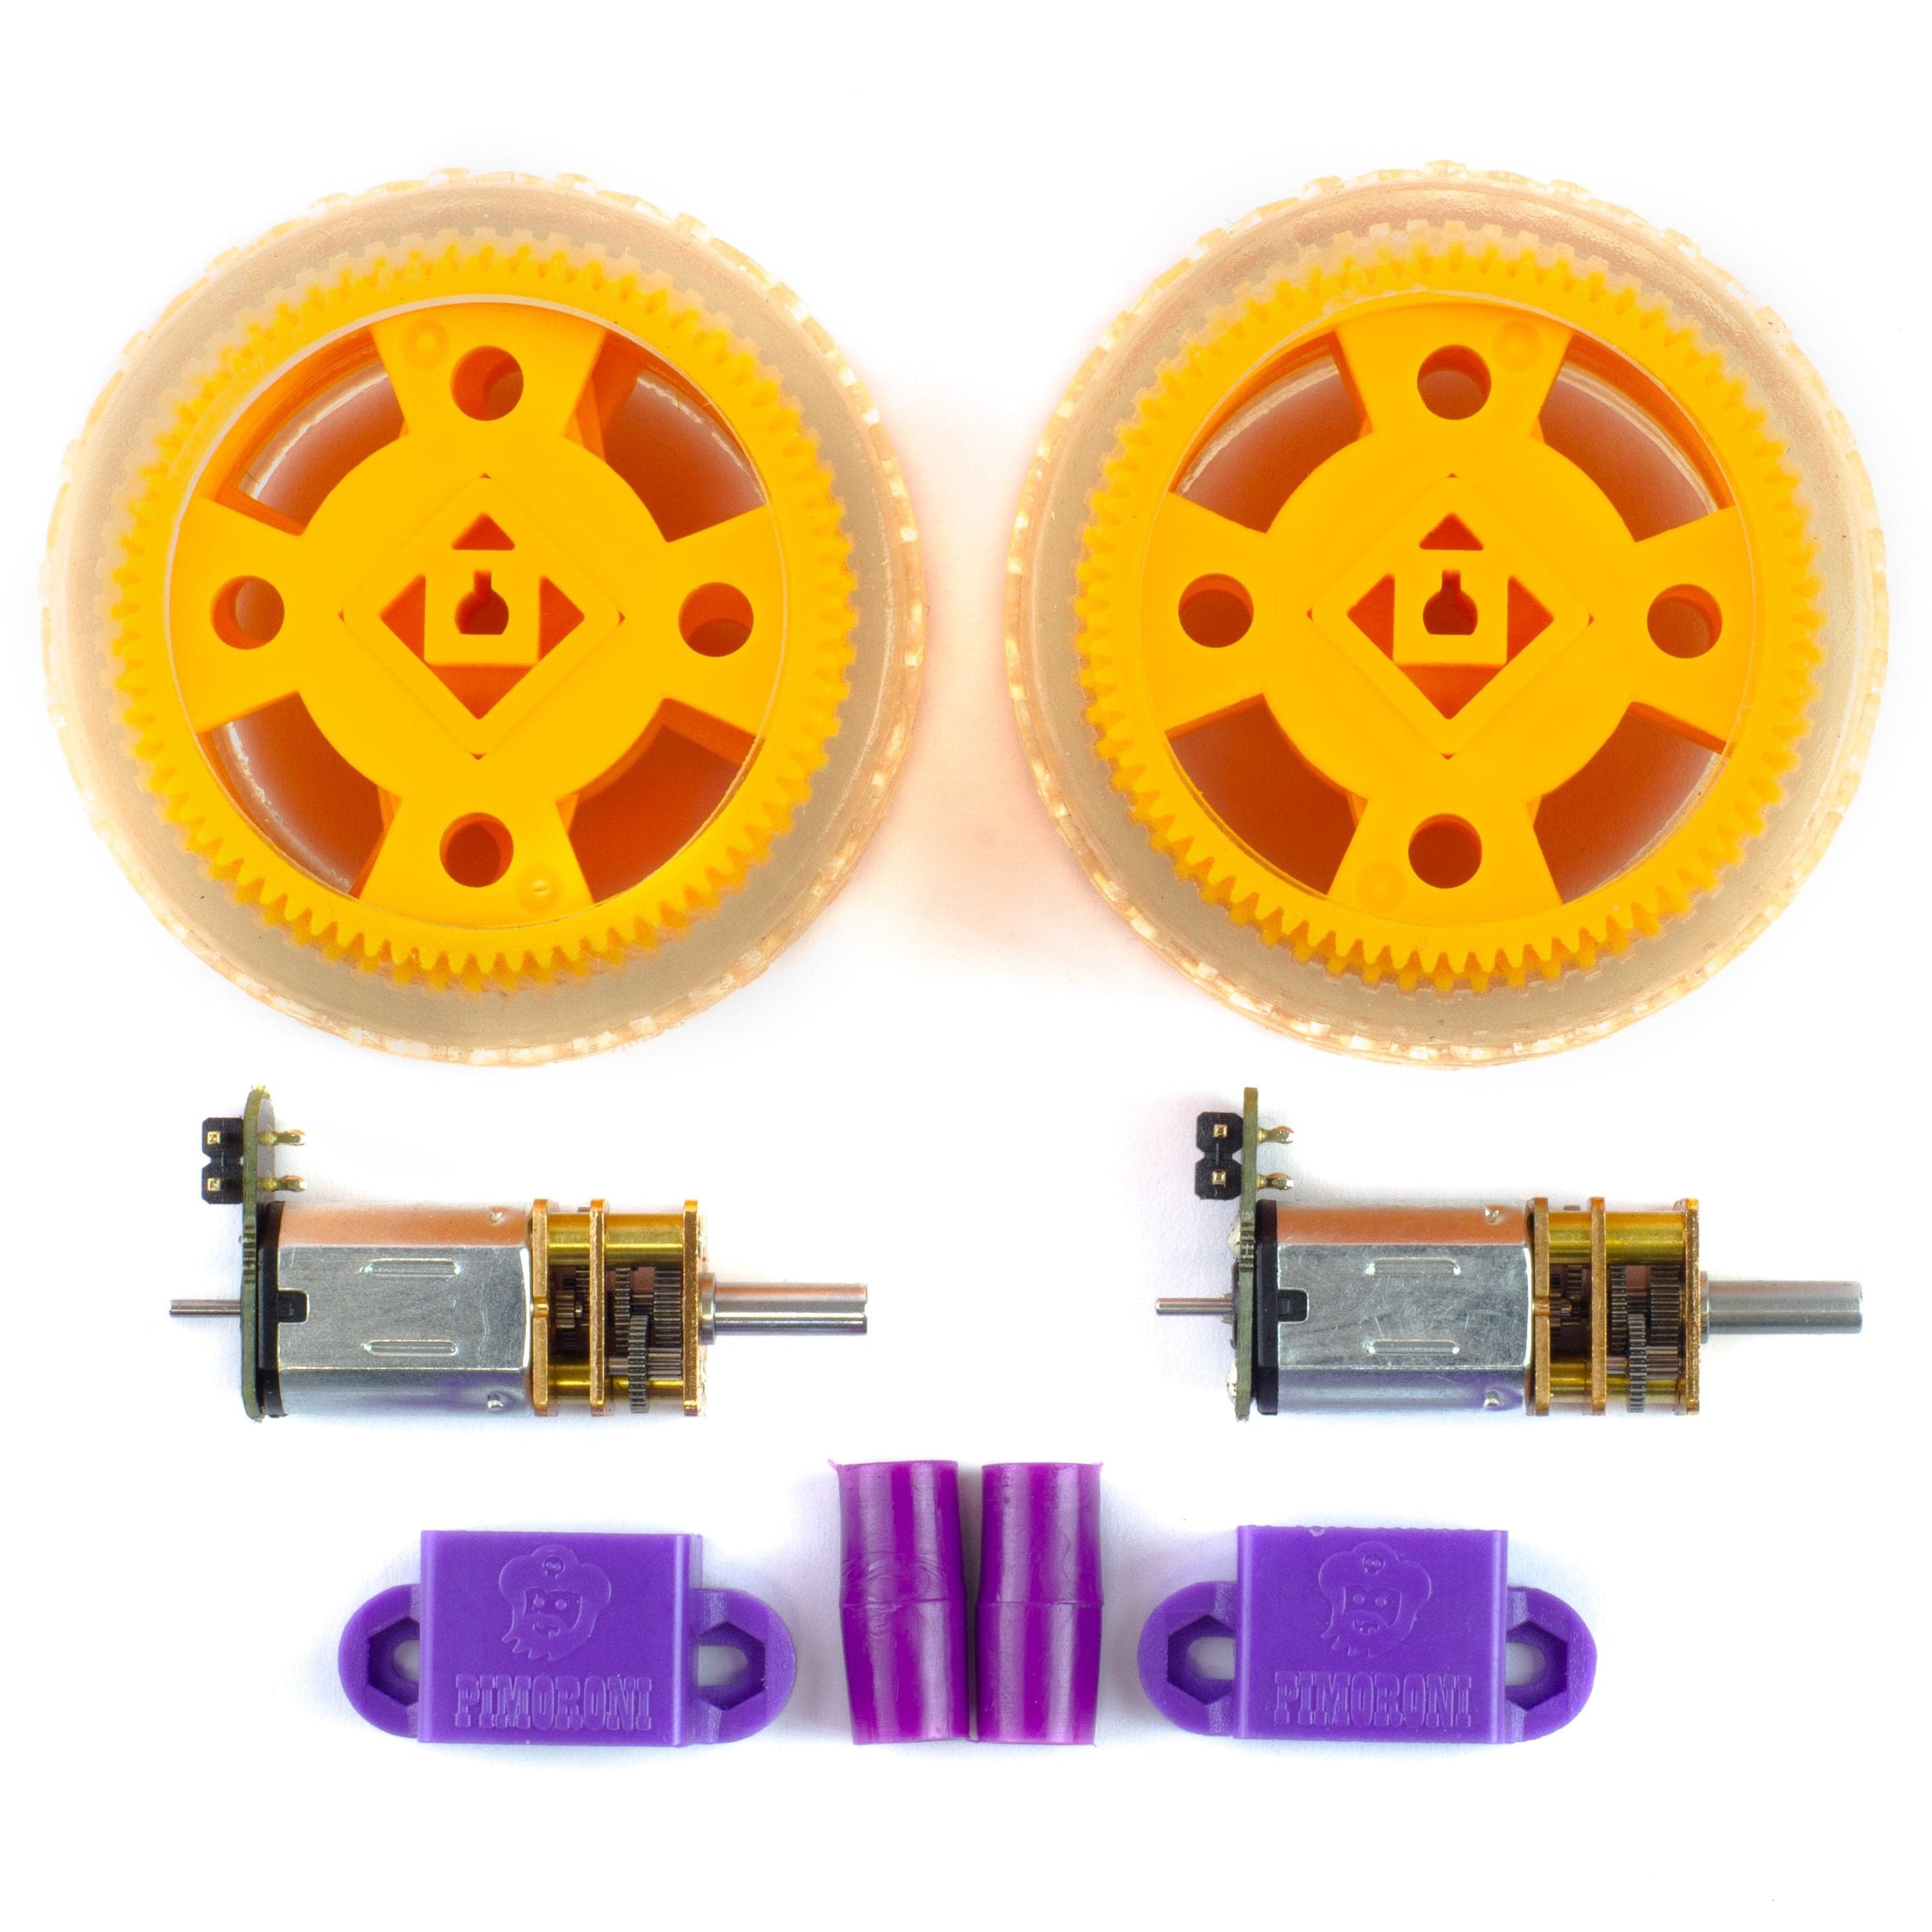 Maker Essentials - Micro-motors & Grippy Wheels - The Pi Hut